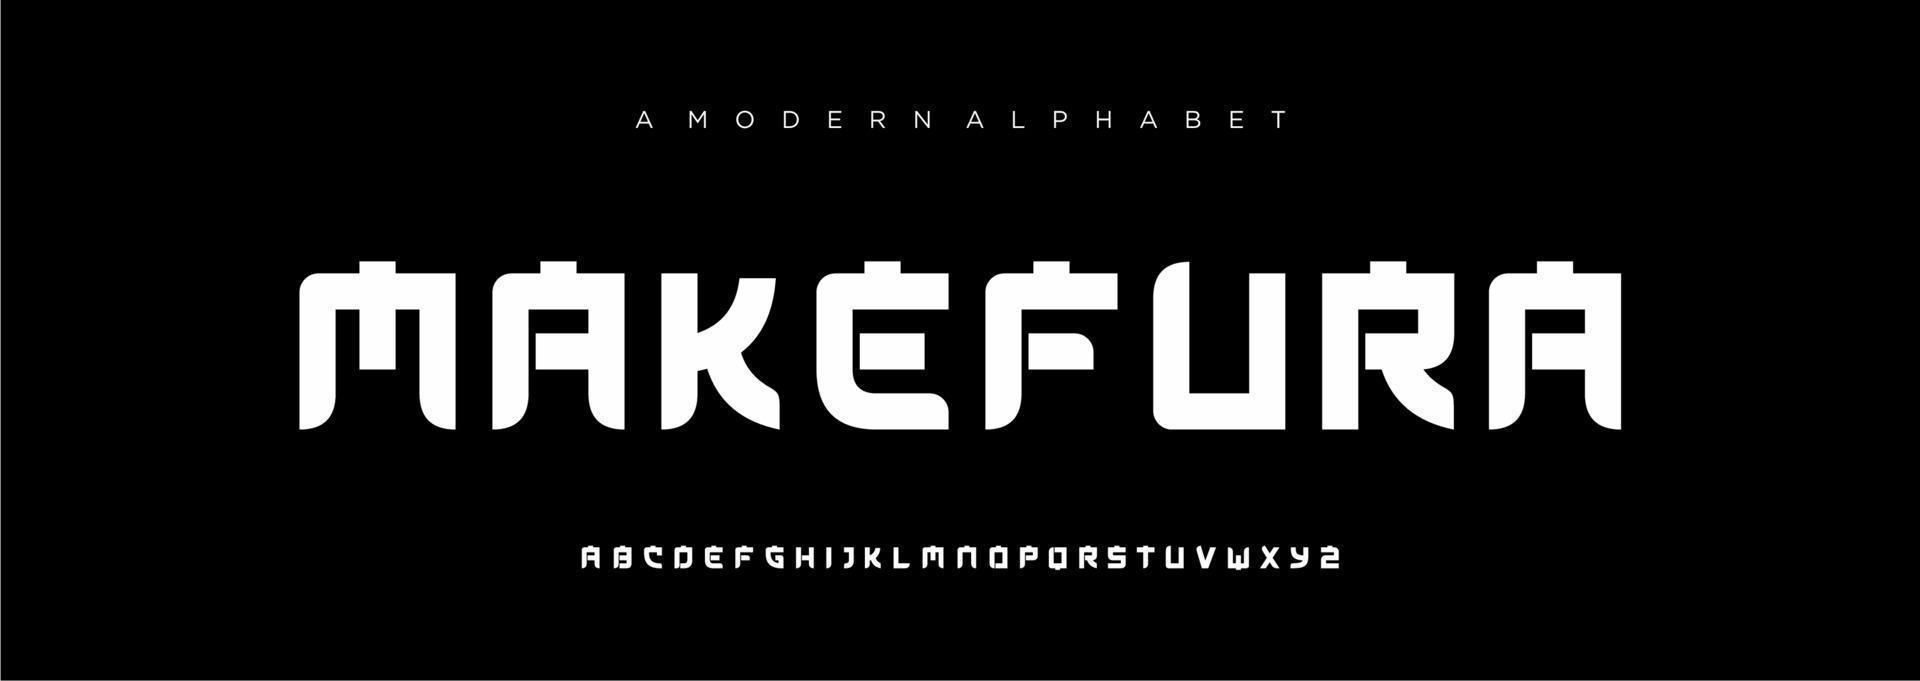 giapponese moderno alfabeto font, Giappone asiatico font stile latino design vettore